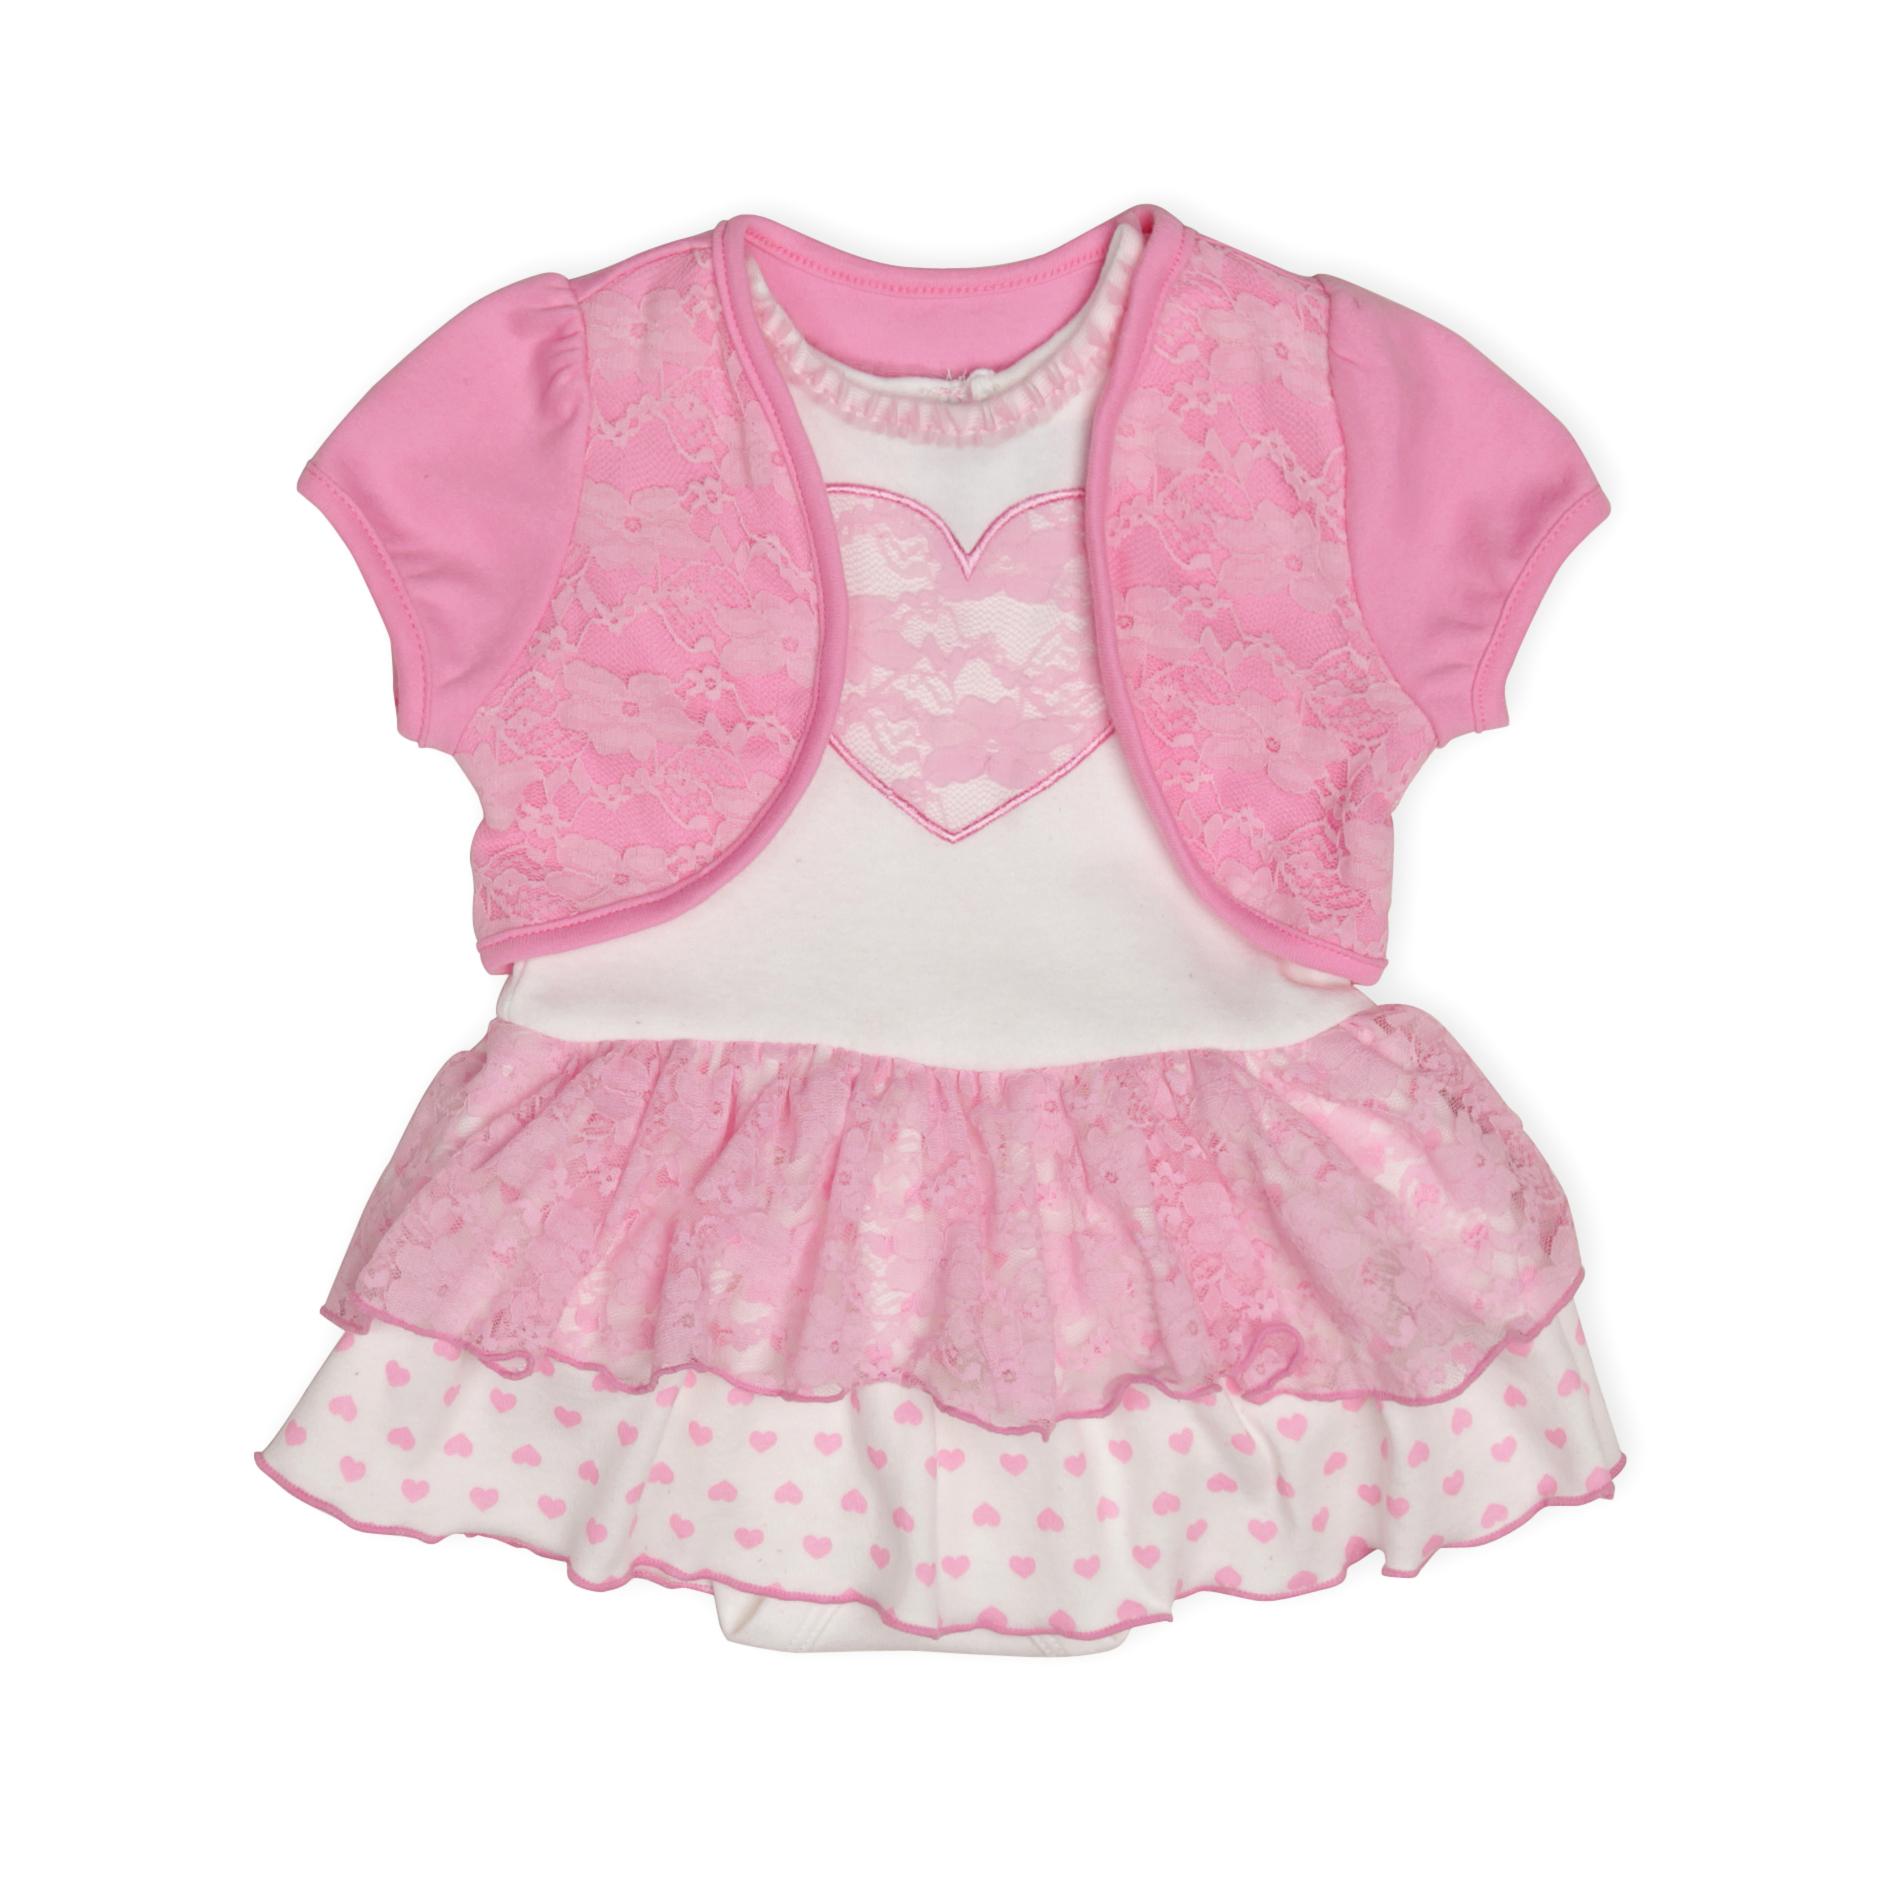 Baby Glam Newborn & Infant Girl's Knit Dress & Shrug - Heart